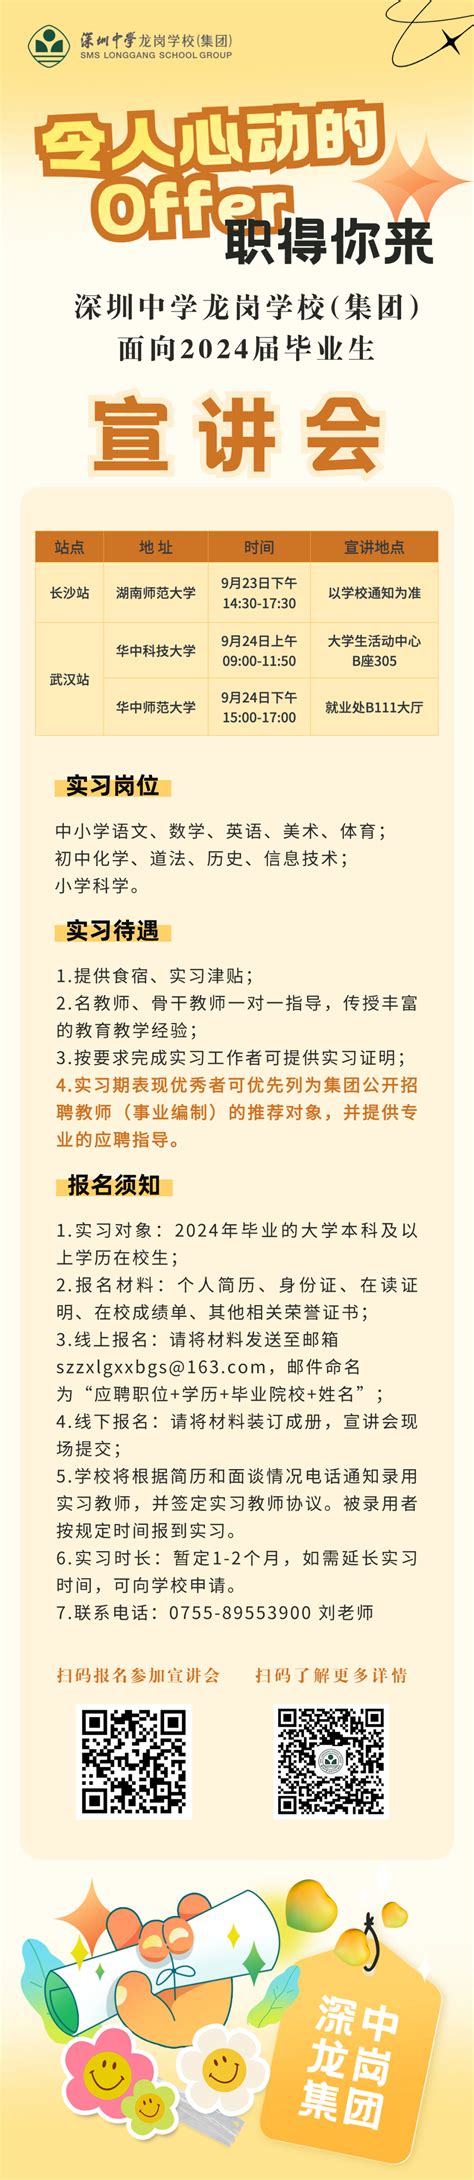 深圳市龙岗区2021年下半年赴武汉、广州面向毕业生公开招聘教师公告_深圳新闻网